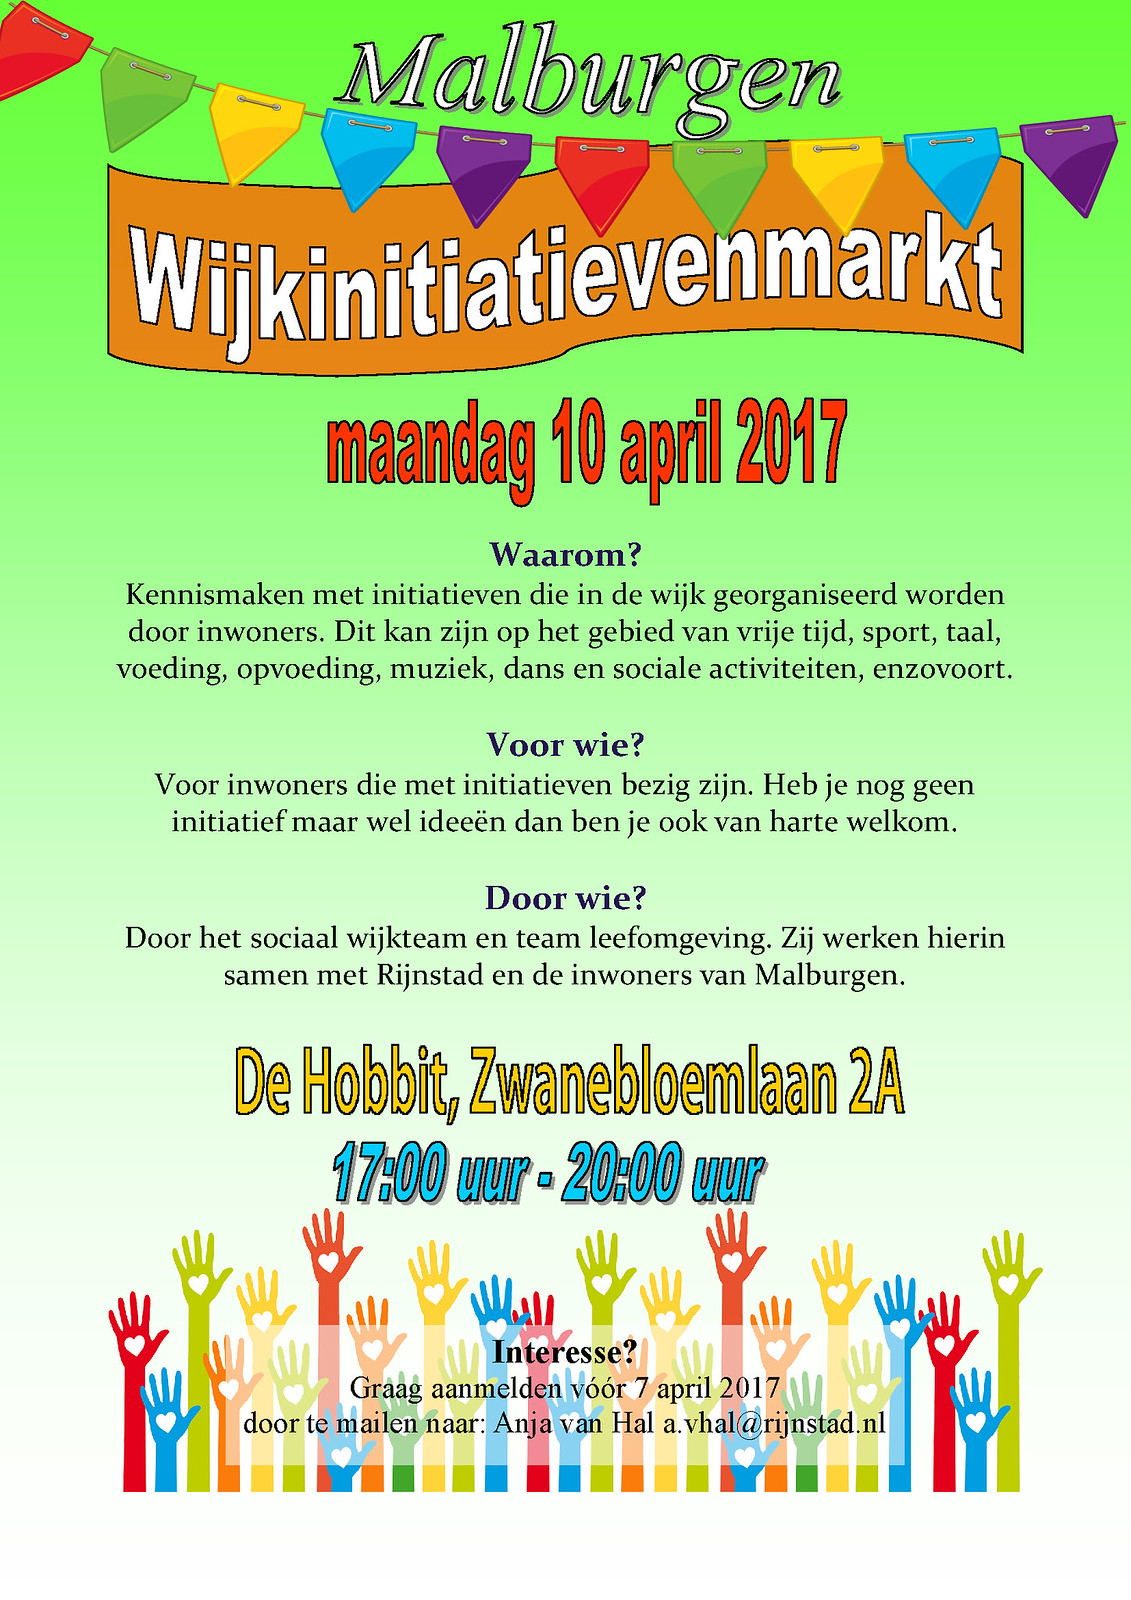 poster wijkinitiatievenmarkt